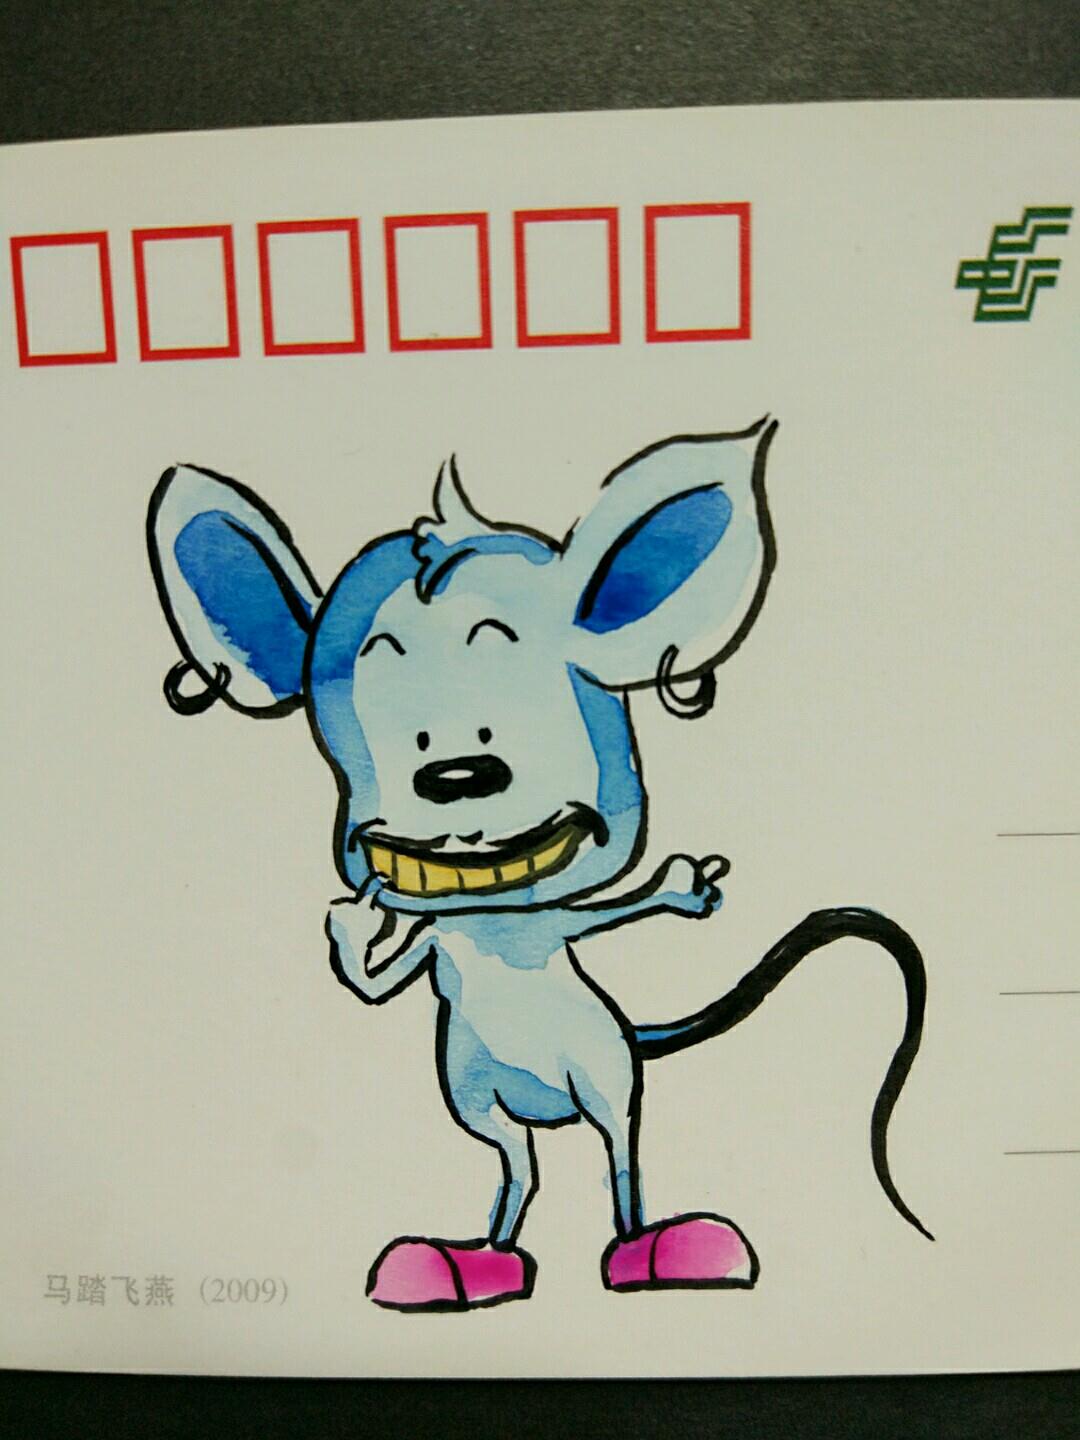  超级可爱的动物手绘作品集之卡哇伊的蓝皮鼠做法